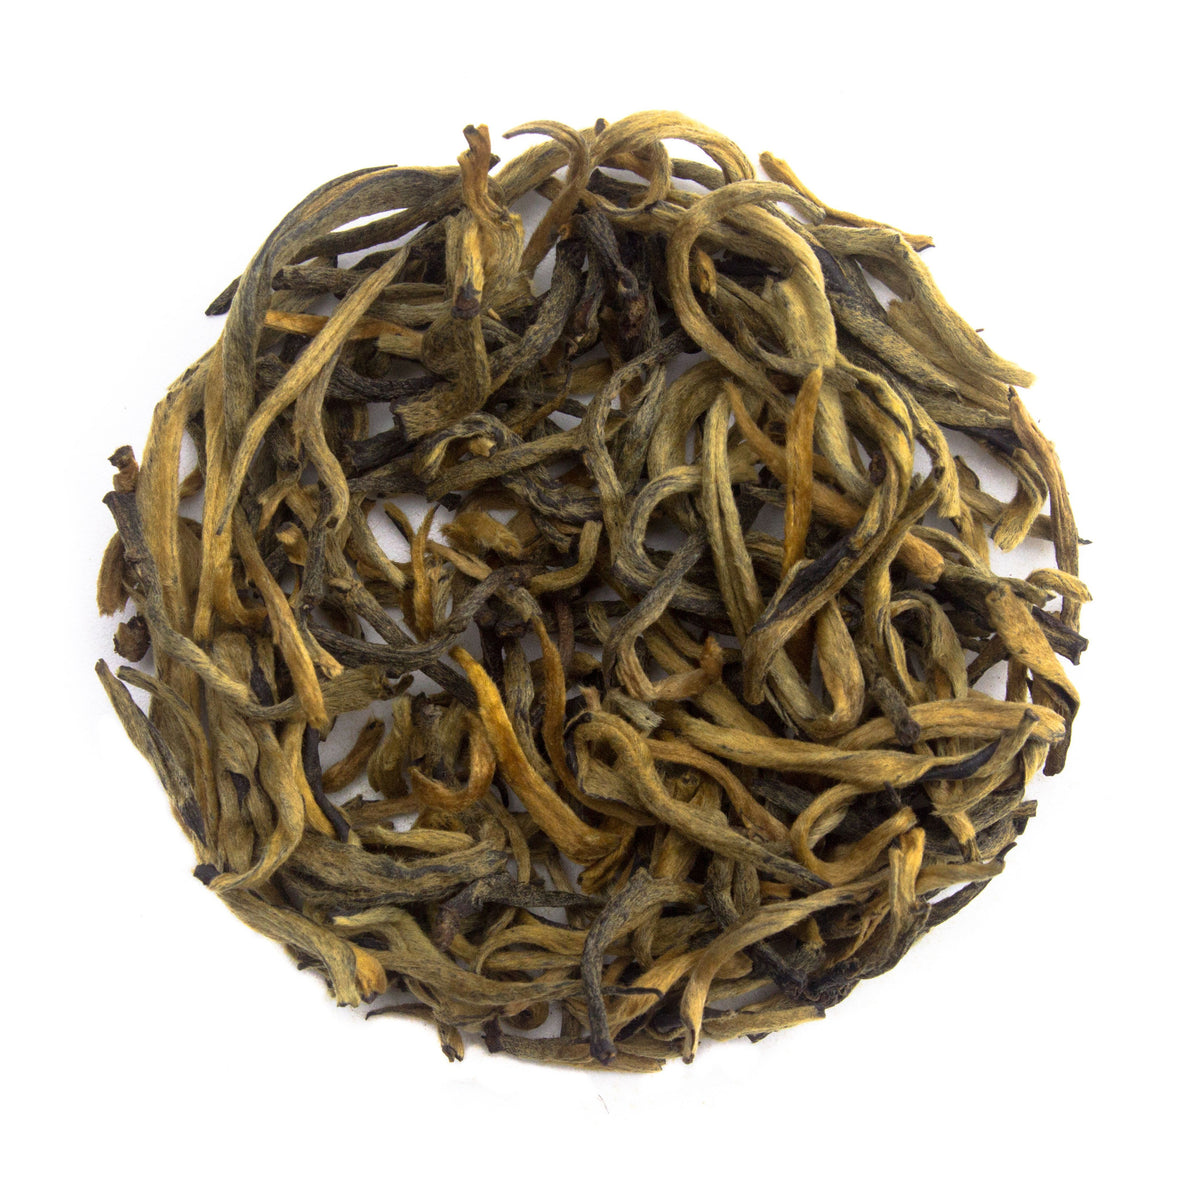 Yunnan Golden Tips Black Tea